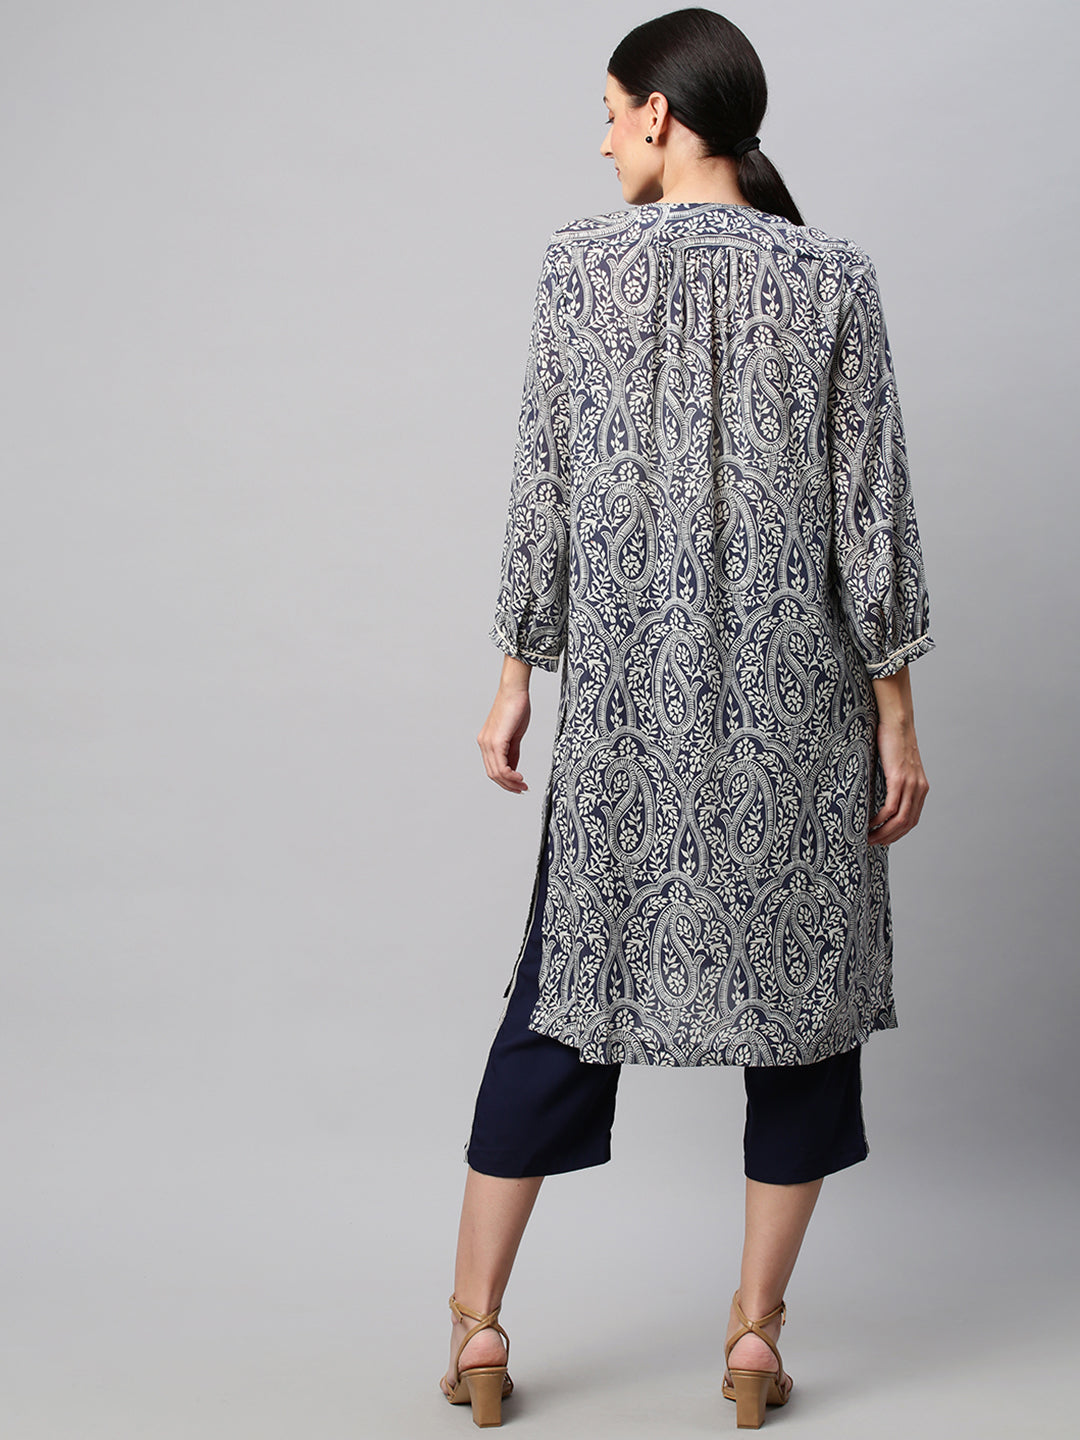 Paisley Printed Modal Tunic With Embroidered Rayon Pyjamas